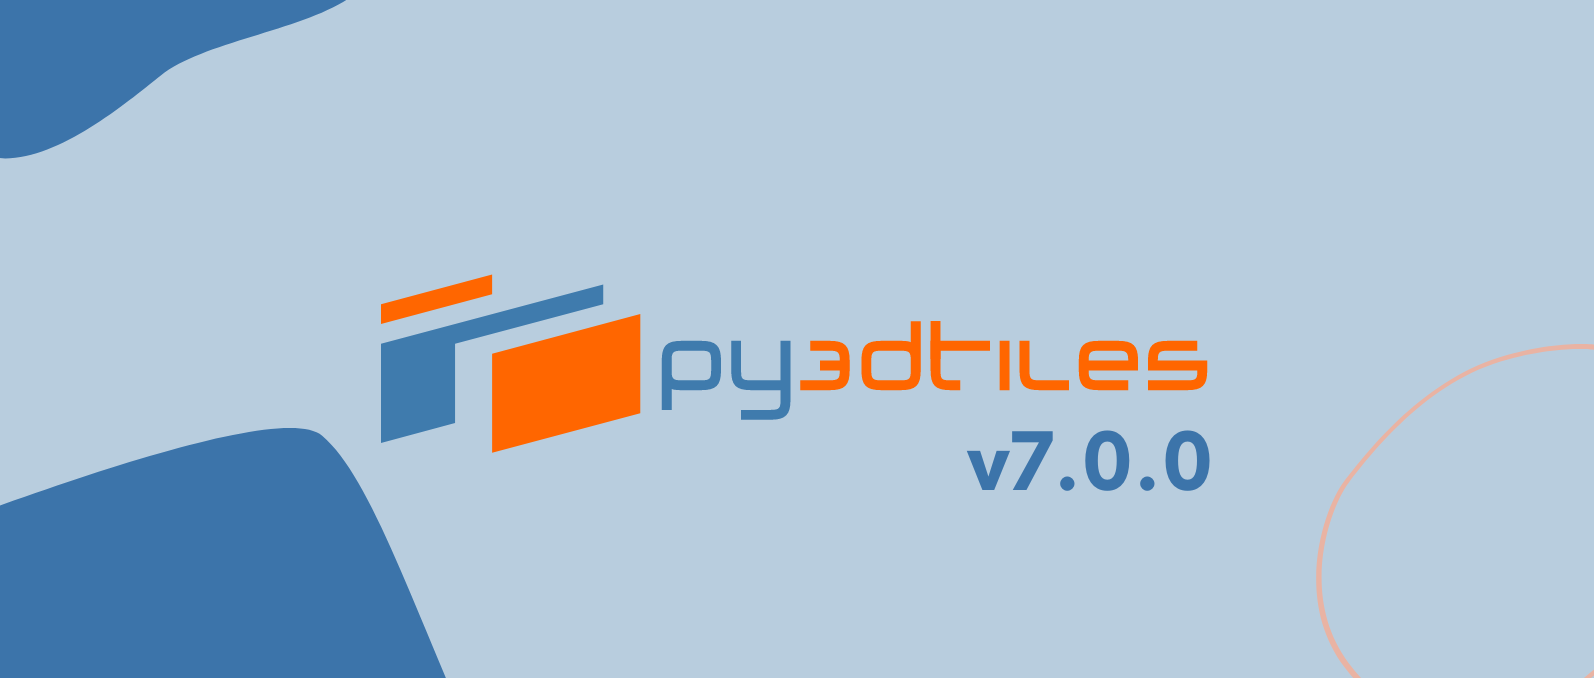 Py3dtiles v7.0.0 est de sortie ! Des fonctionnalités, et une communauté qui se développe